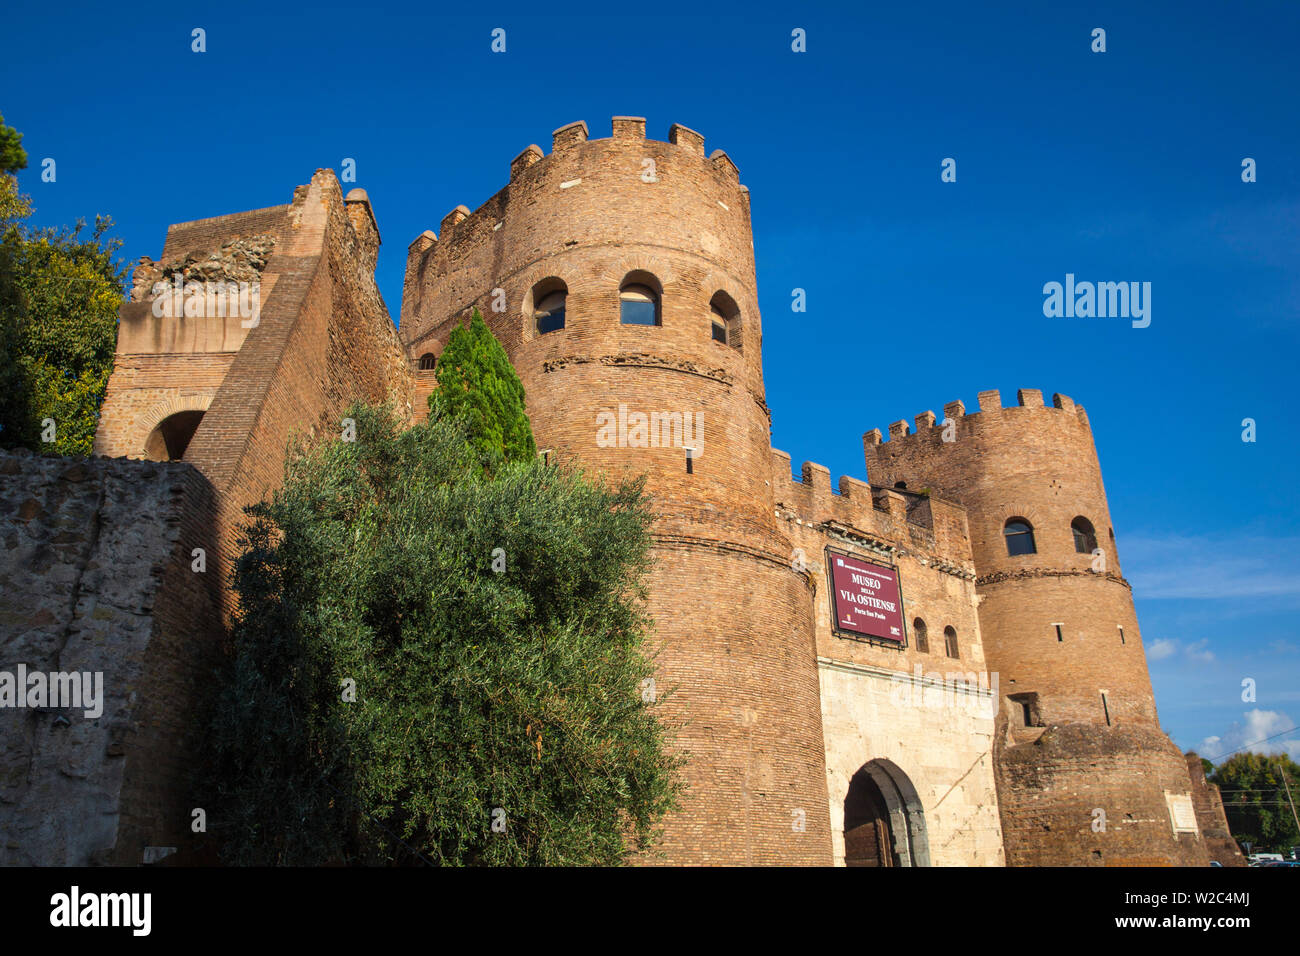 L'Italie, Lazio, Rome, l'antique Via Appia, St Paul's Gate et musée de la façon Château Latour - Gîte Donjon Banque D'Images